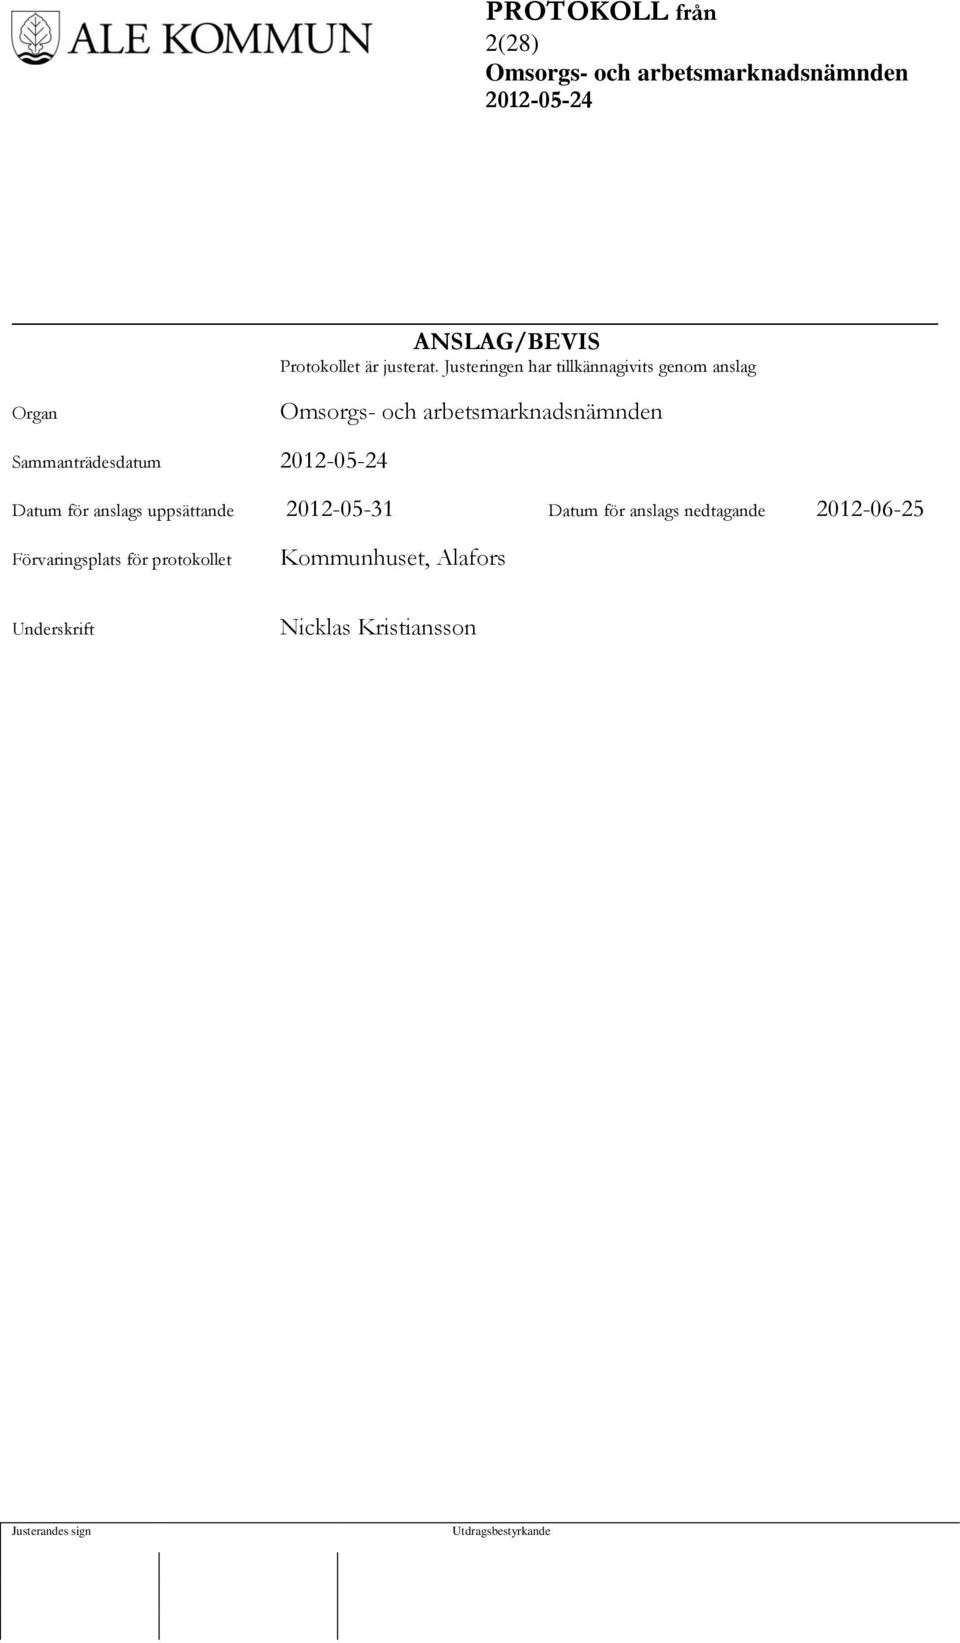 Datum för anslags uppsättande 2012-05-31 Datum för anslags nedtagande